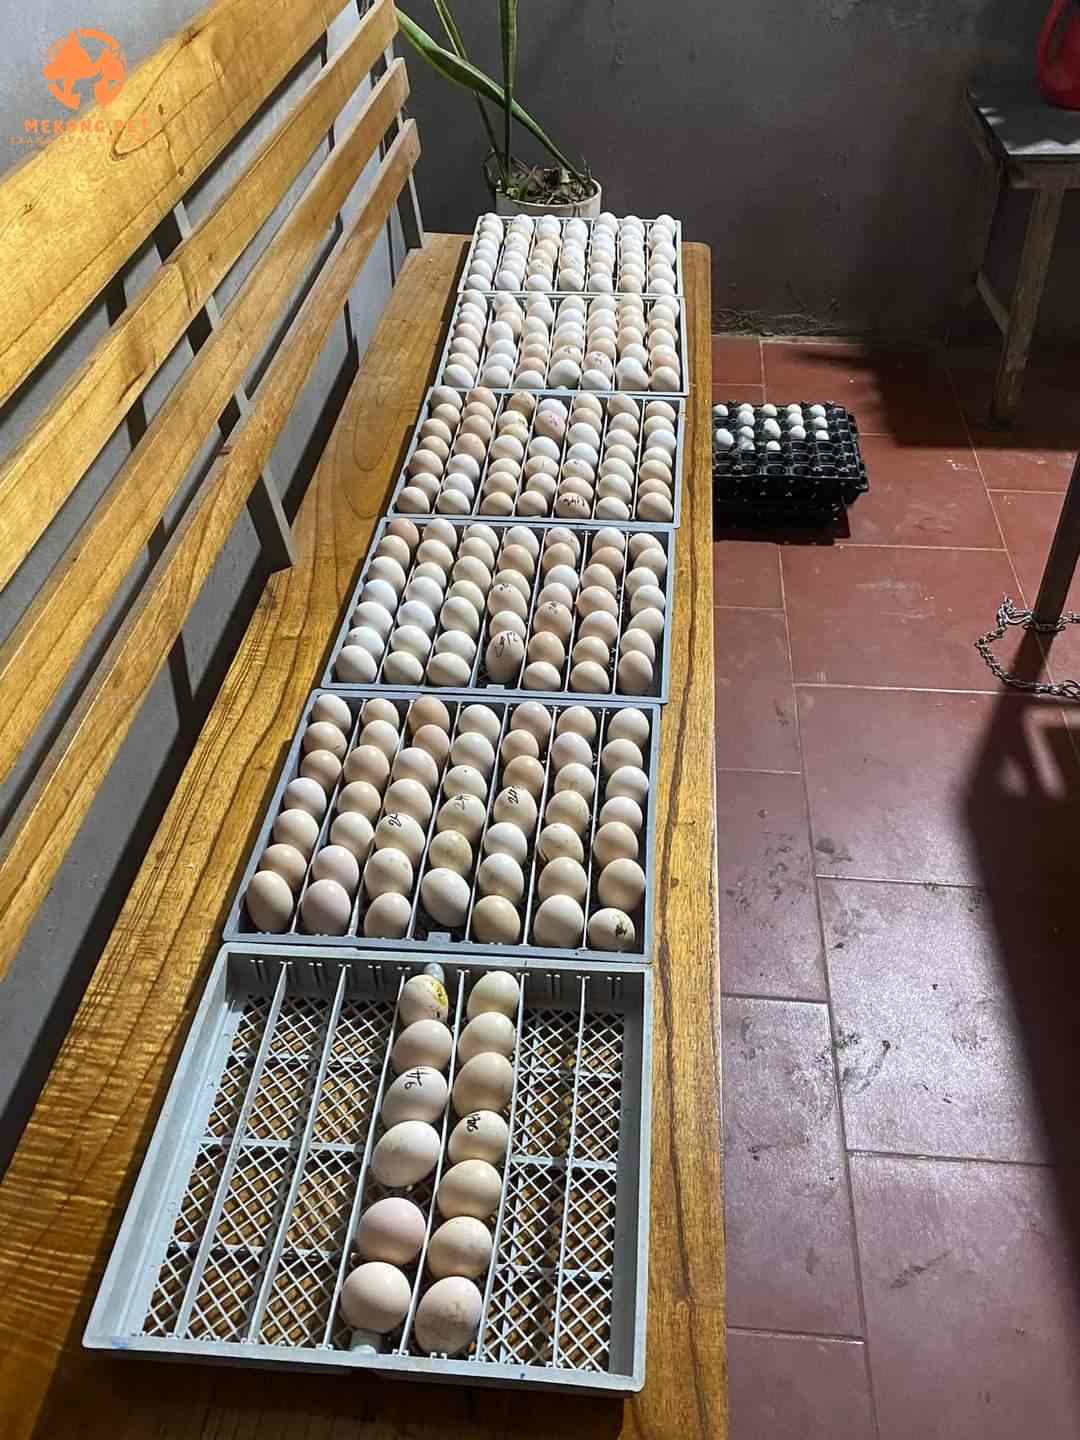 Trứng gà h mông chuẩn bị cho vào lồng ấp